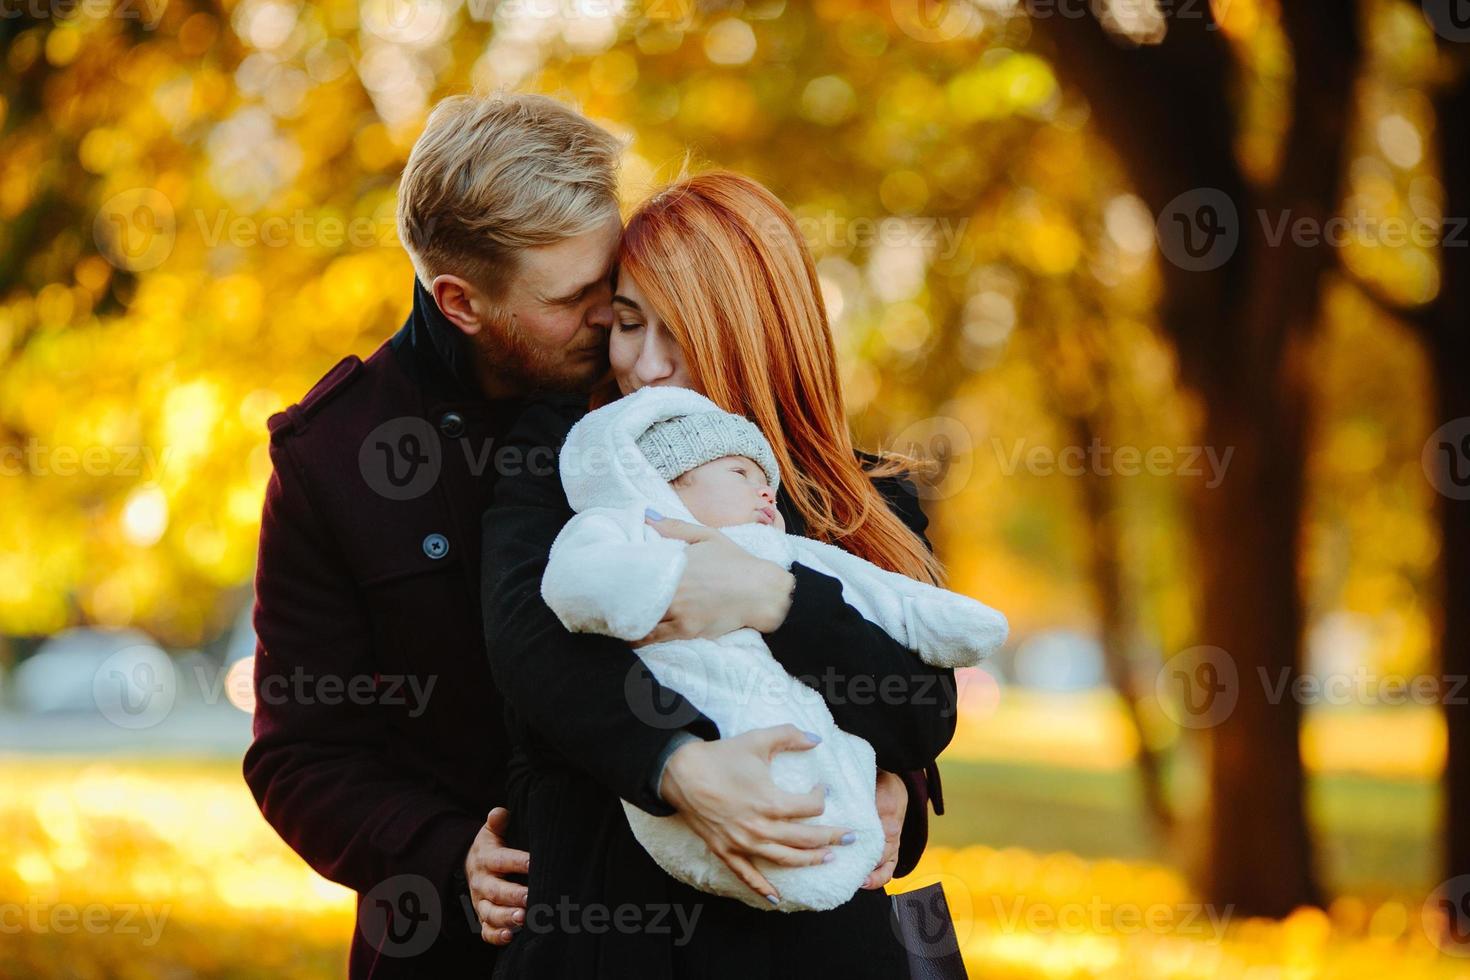 jeune famille et fils nouveau-né dans le parc d'automne photo